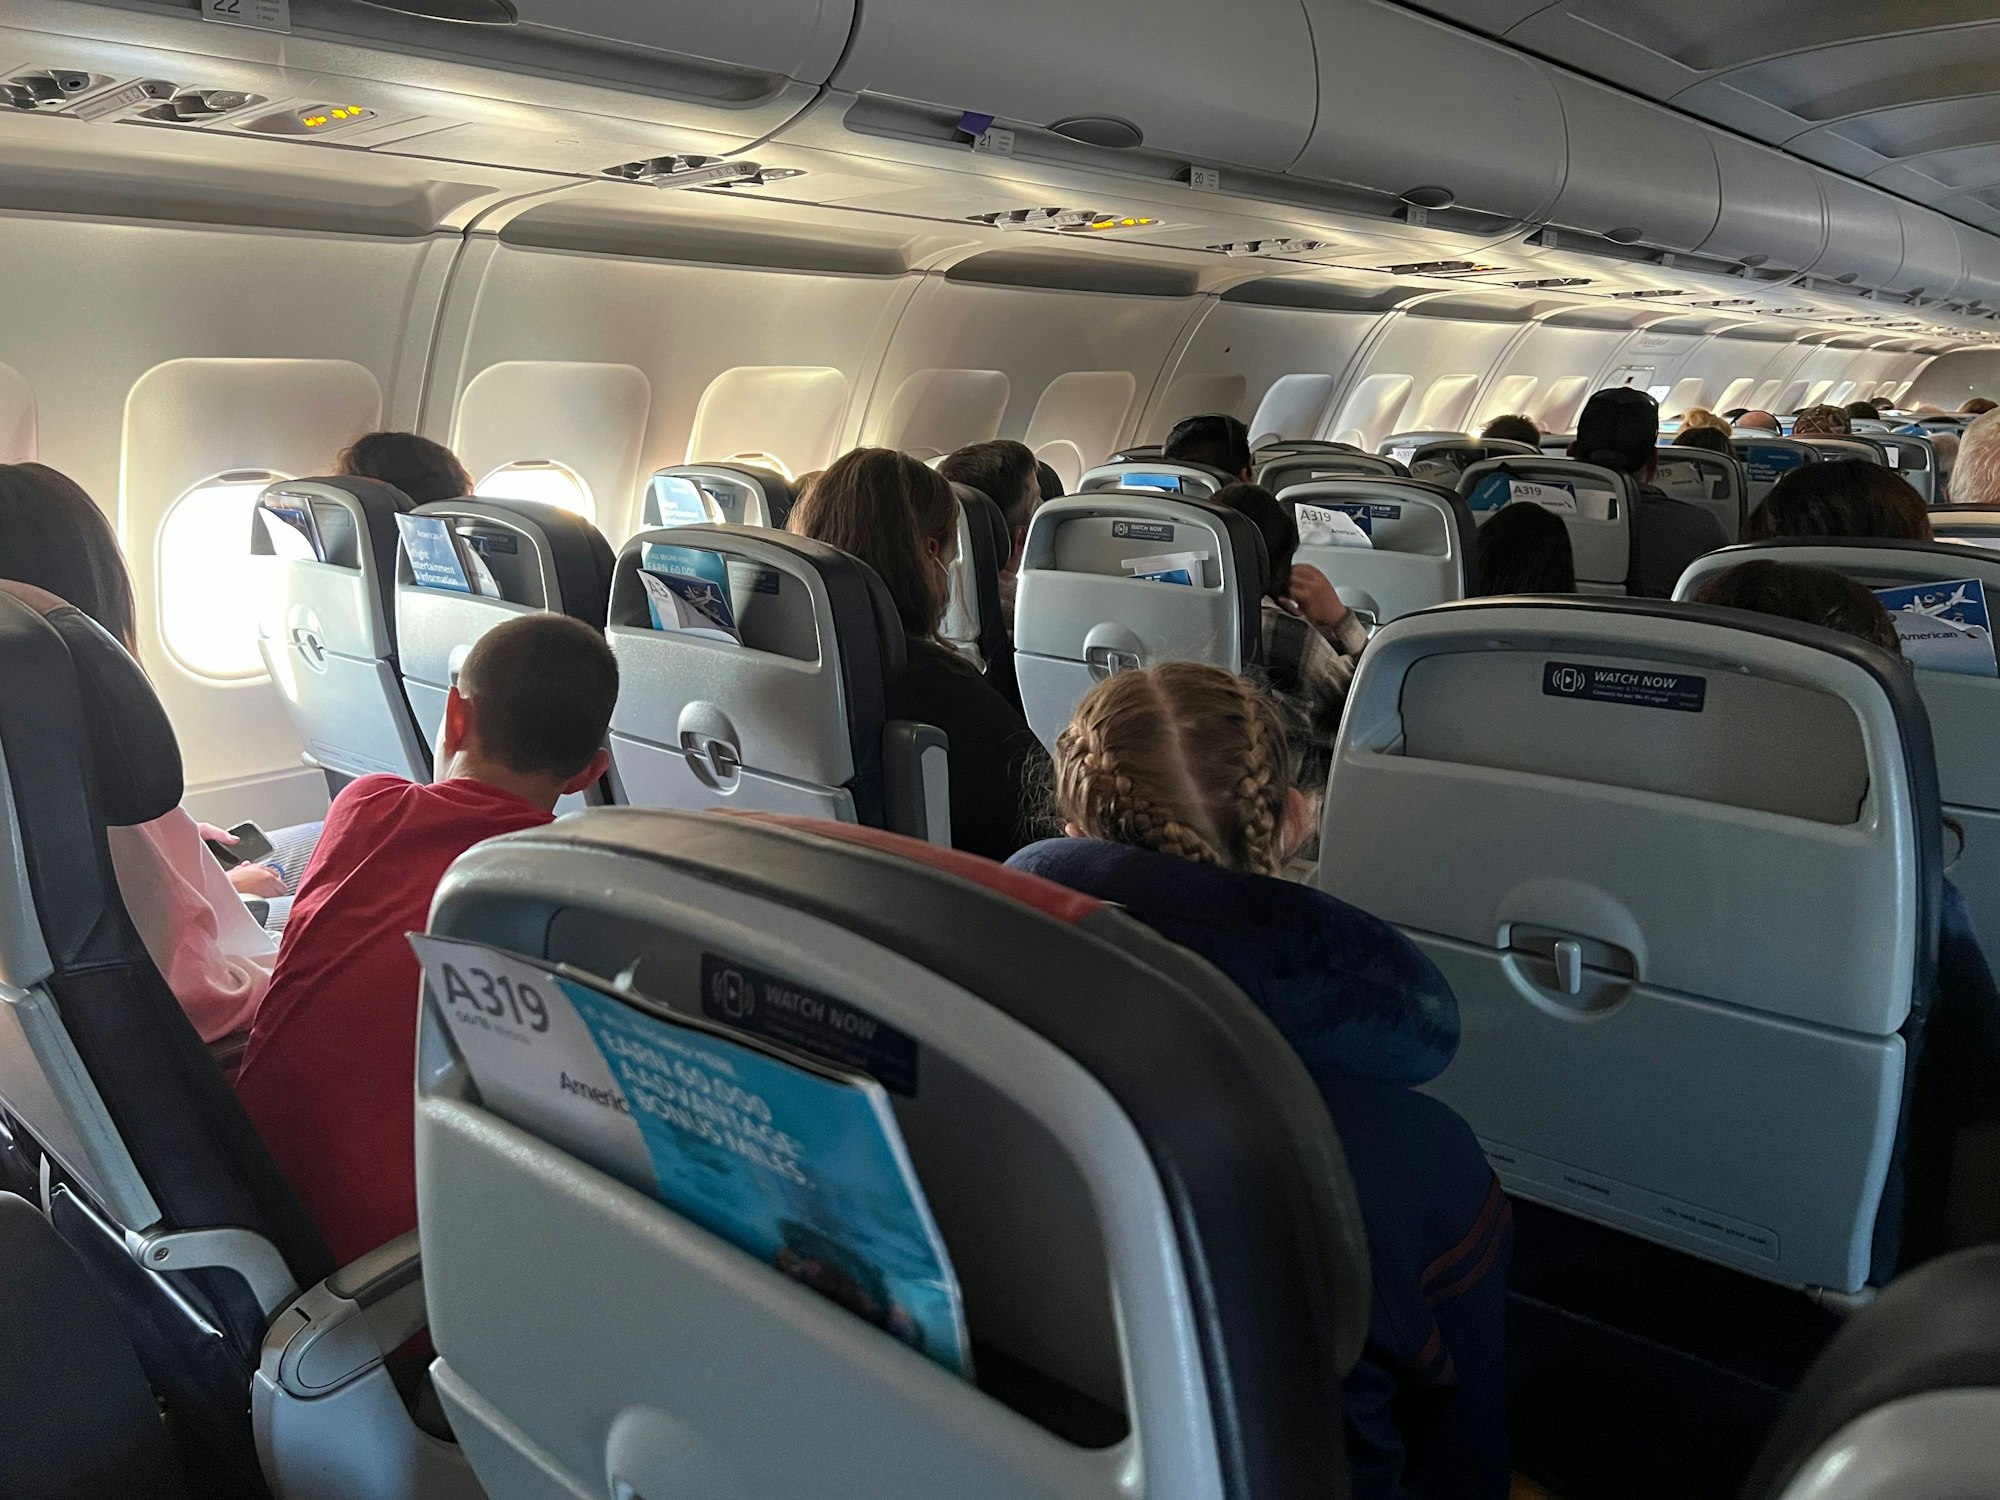 Reisende der American Airlines warten auf ihren Sitzen im Airbus A319 Flugzeug vor dem Abflug. Die Aufnahme dient als Symbolfoto.